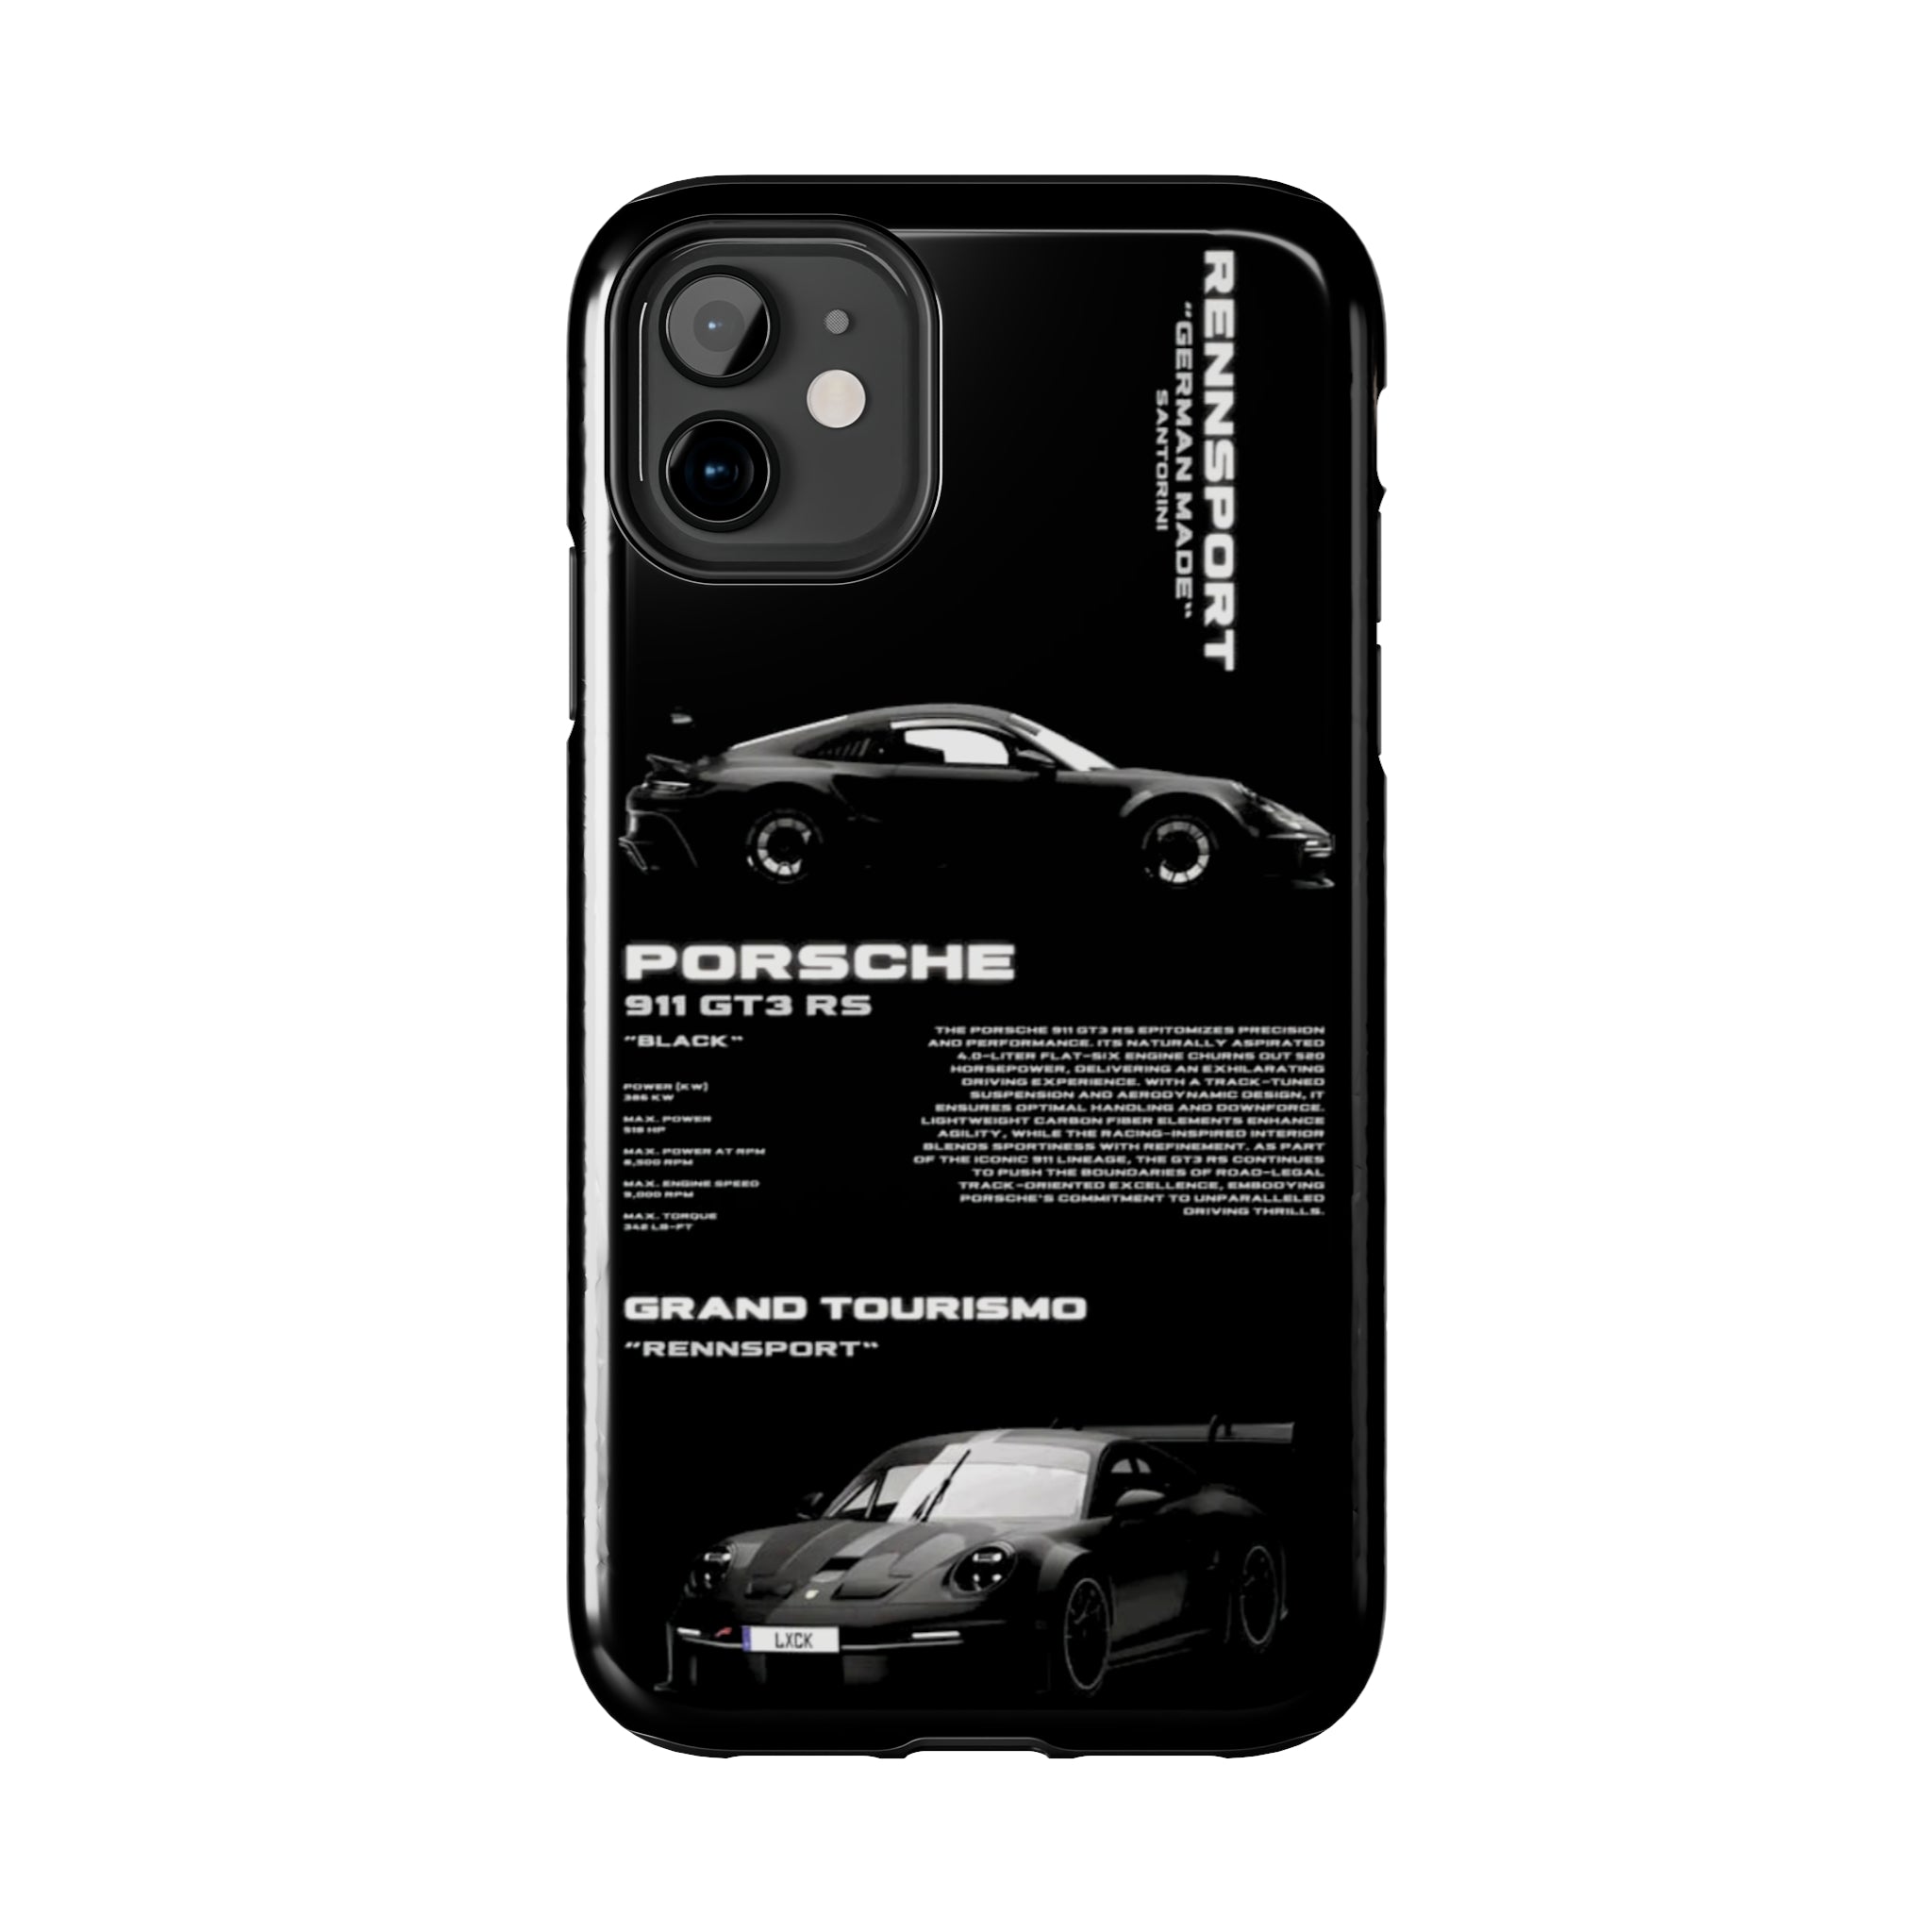 Porsche 911 GT2 RS "Noir"